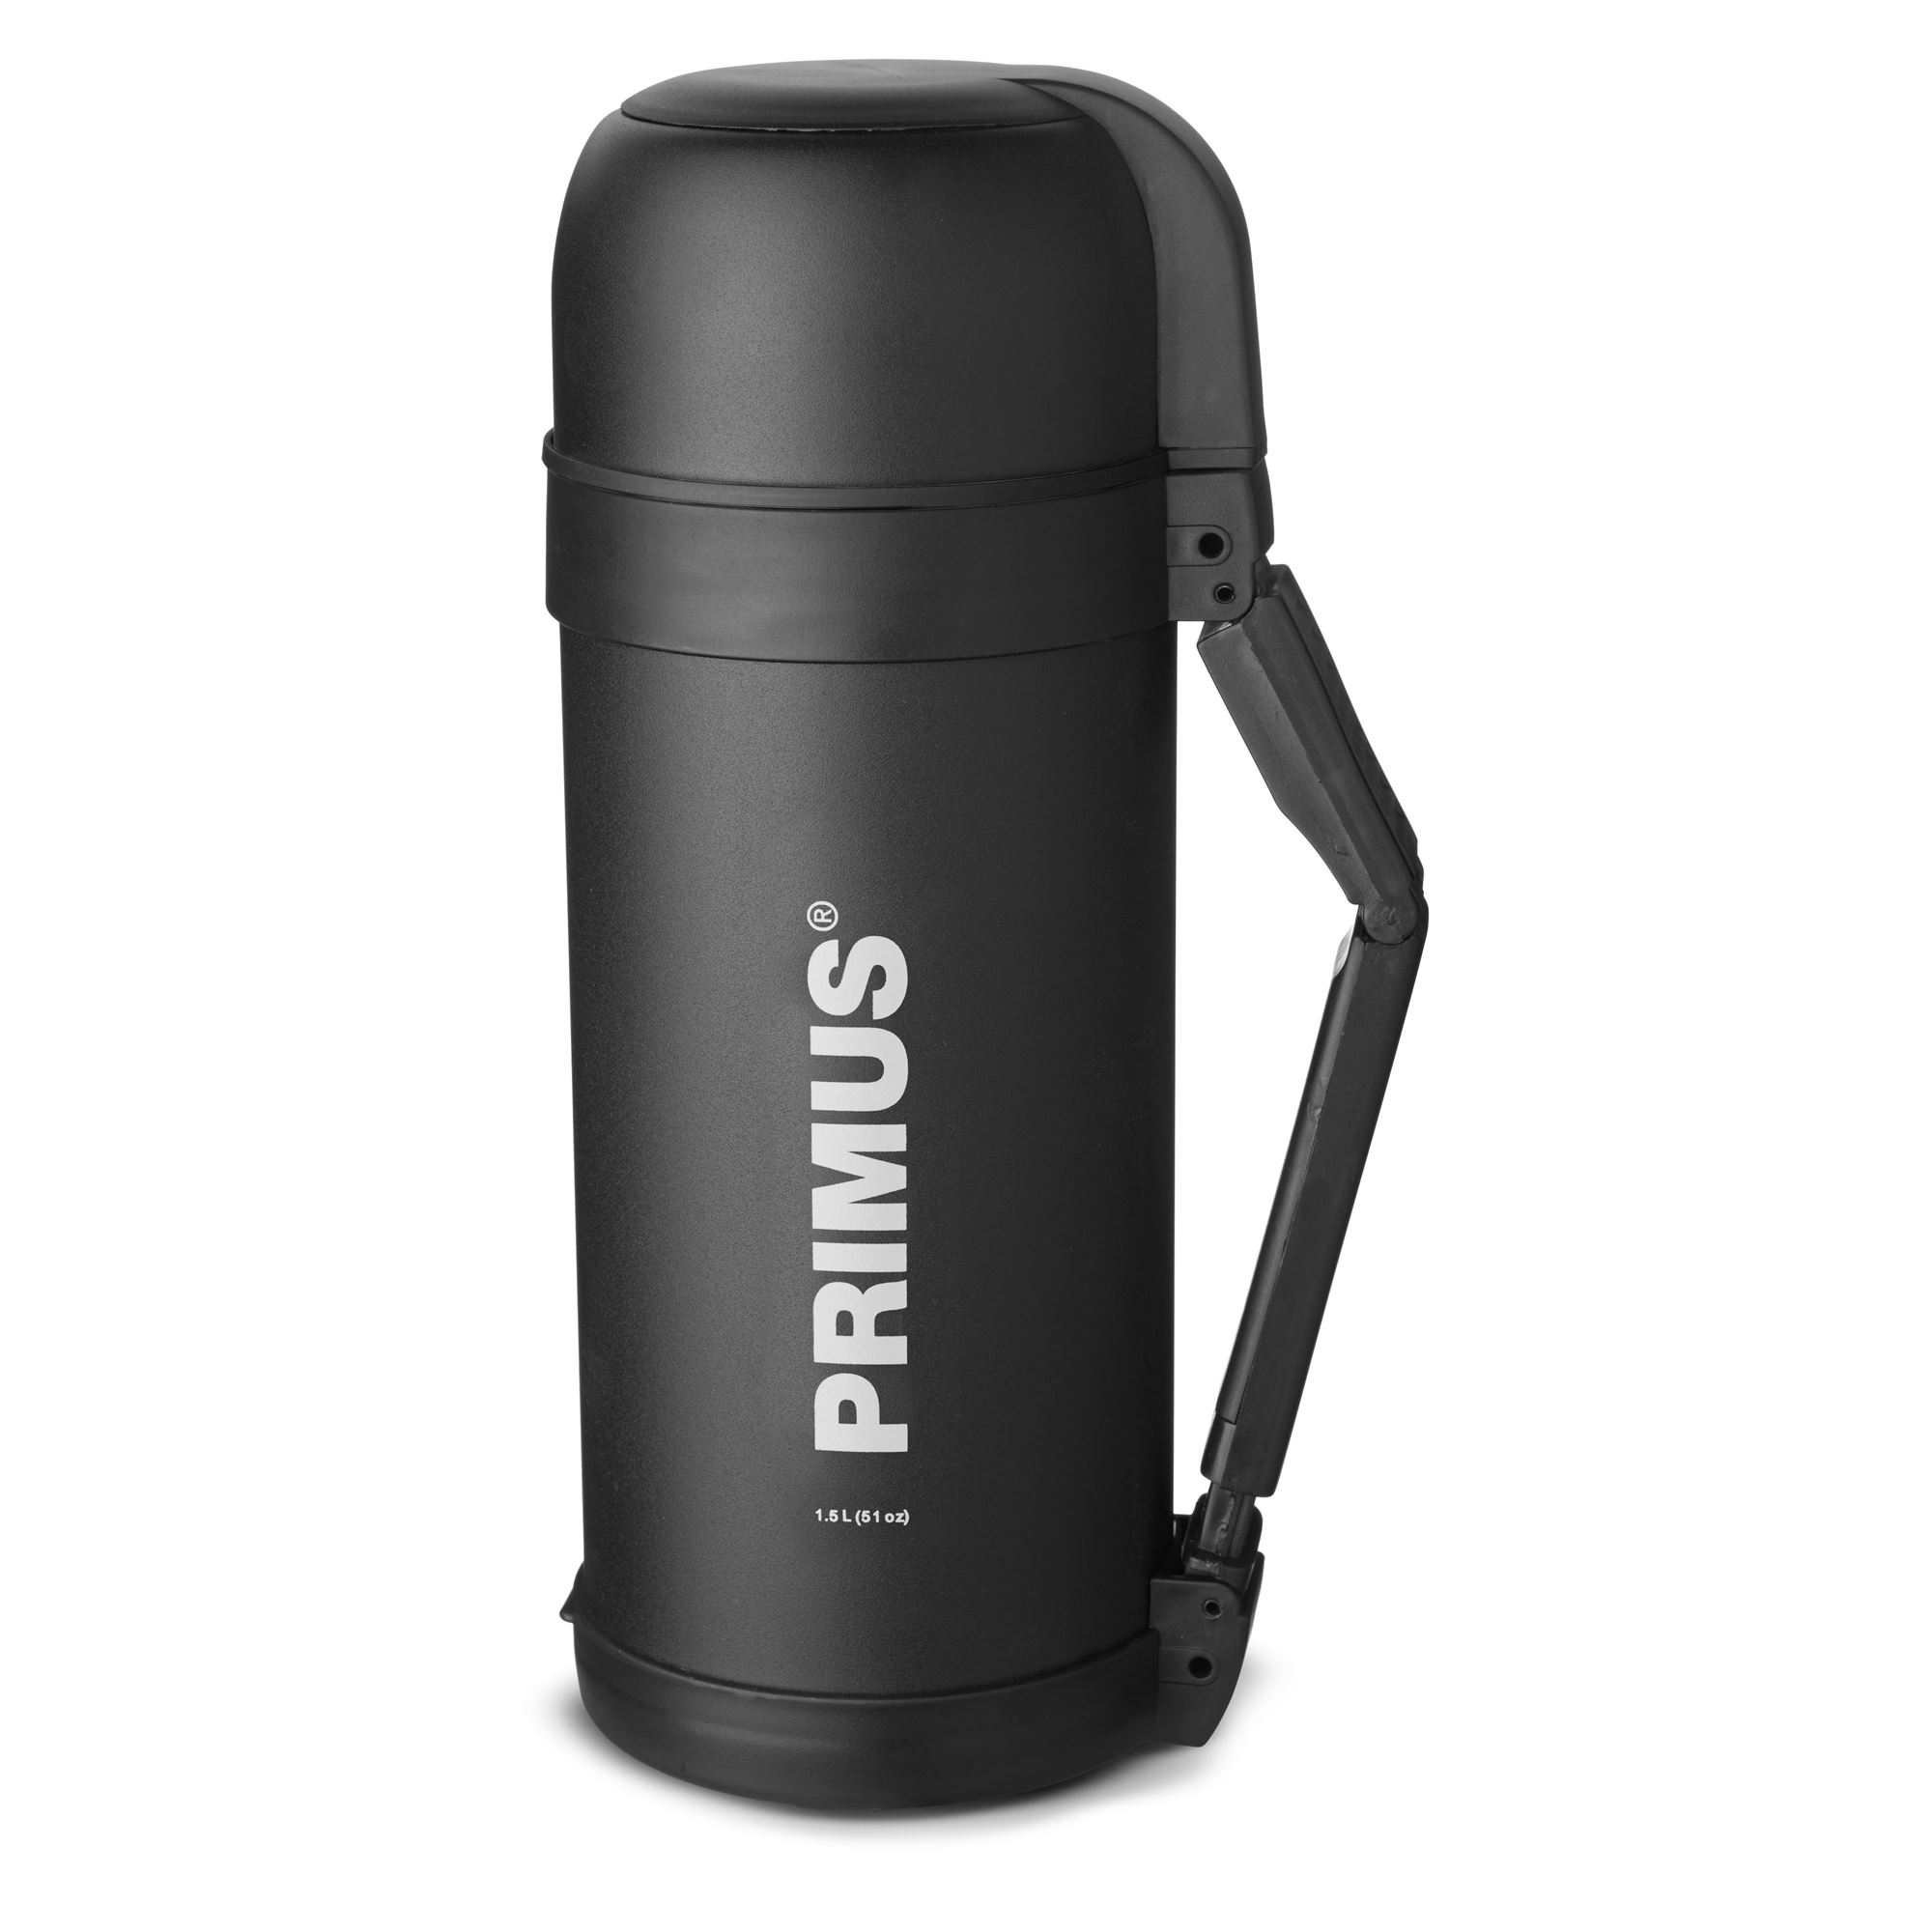 Primus termoska Food Vacuum Bottle 1.5 L